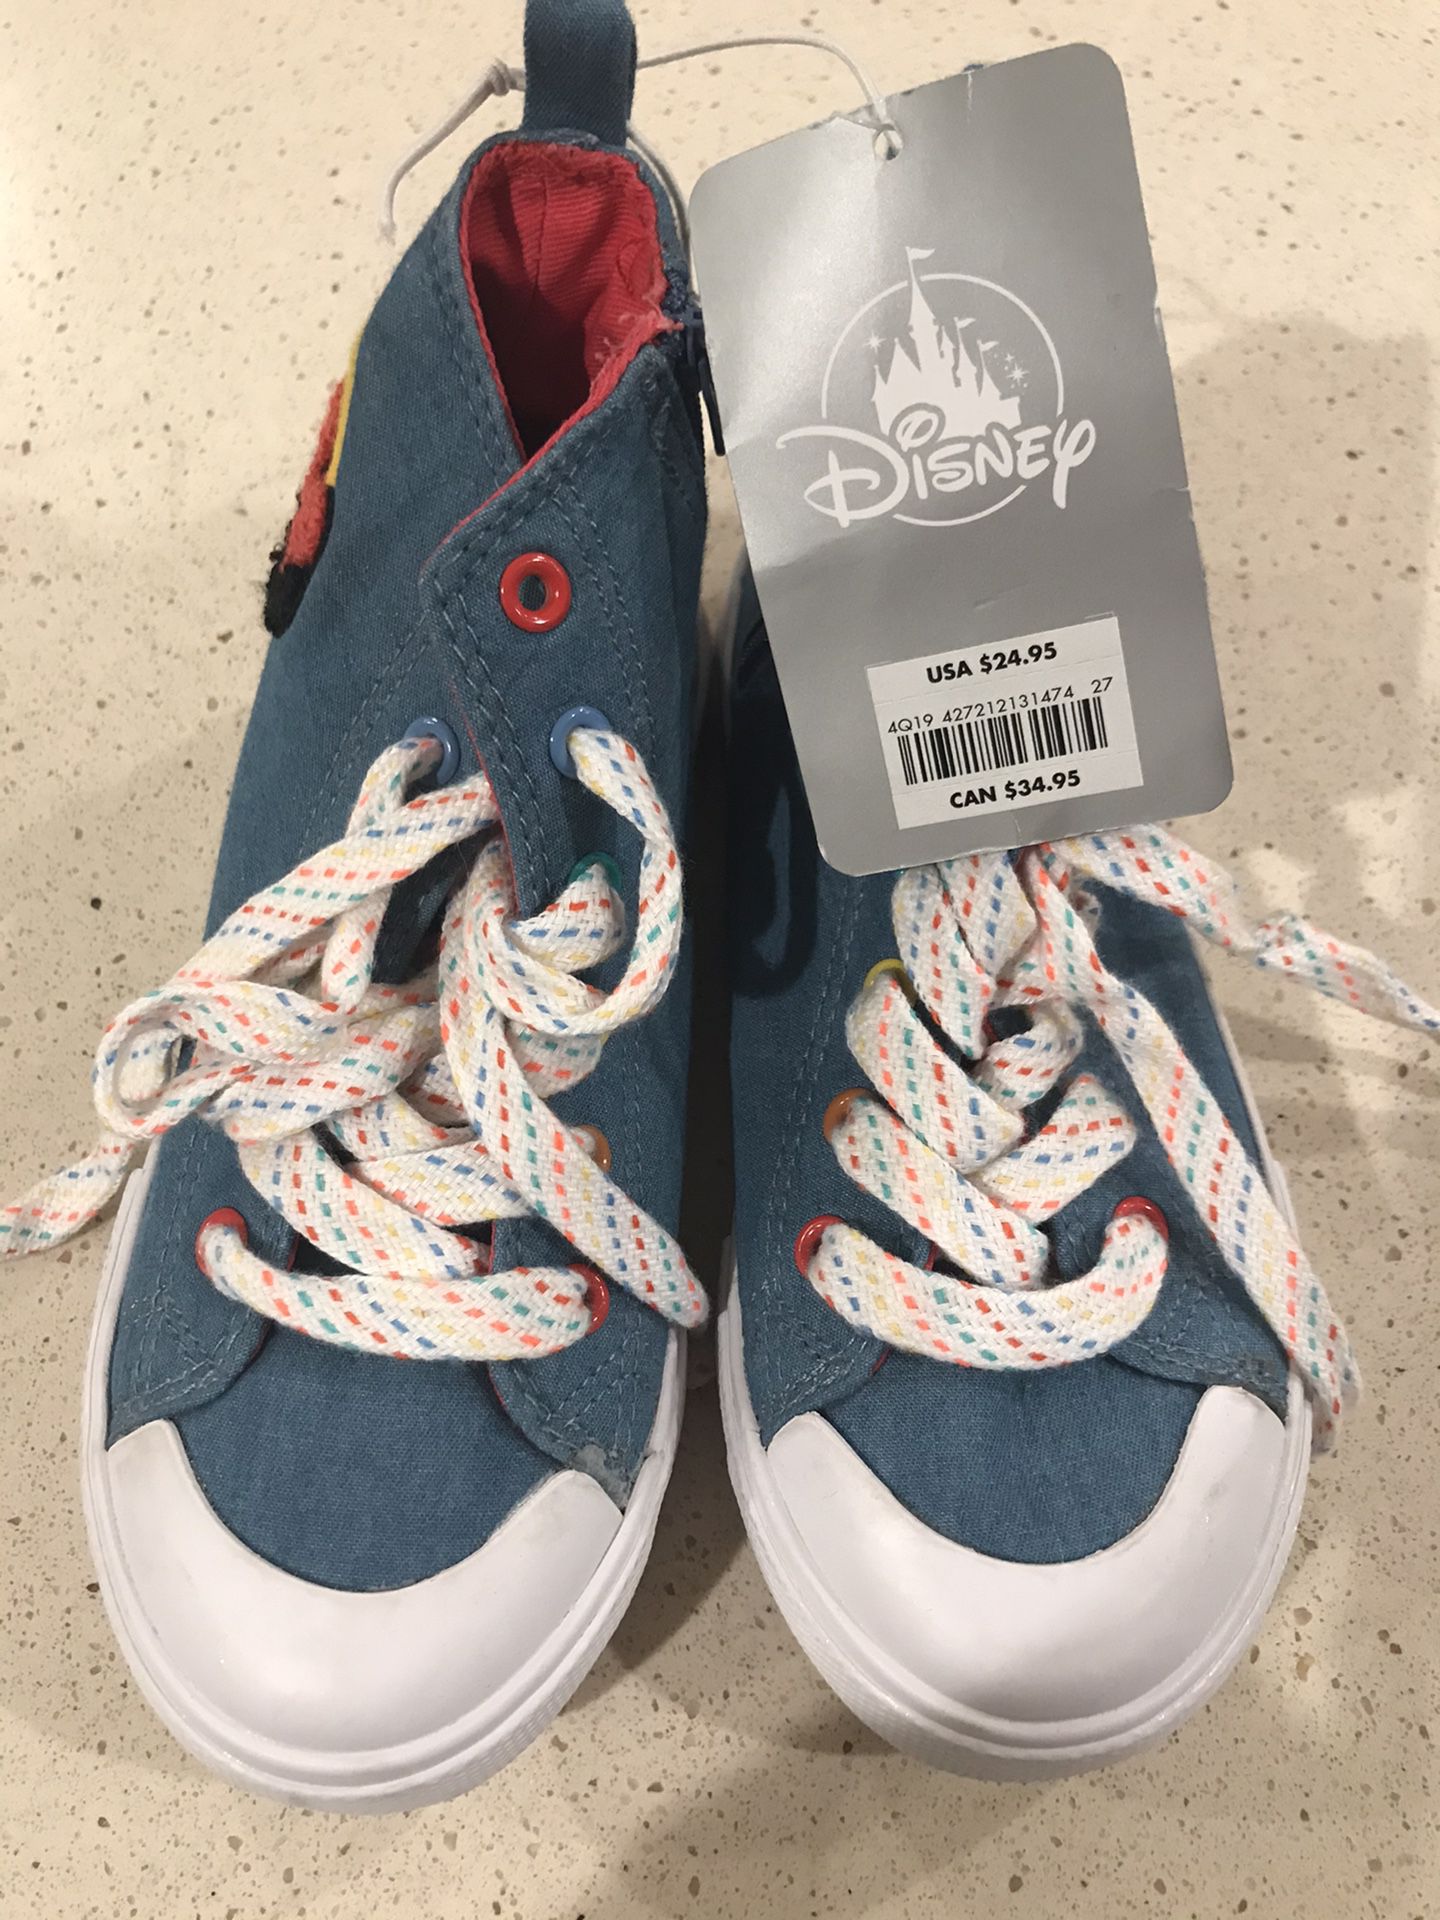 Size 12 Minnie Shoes Disney